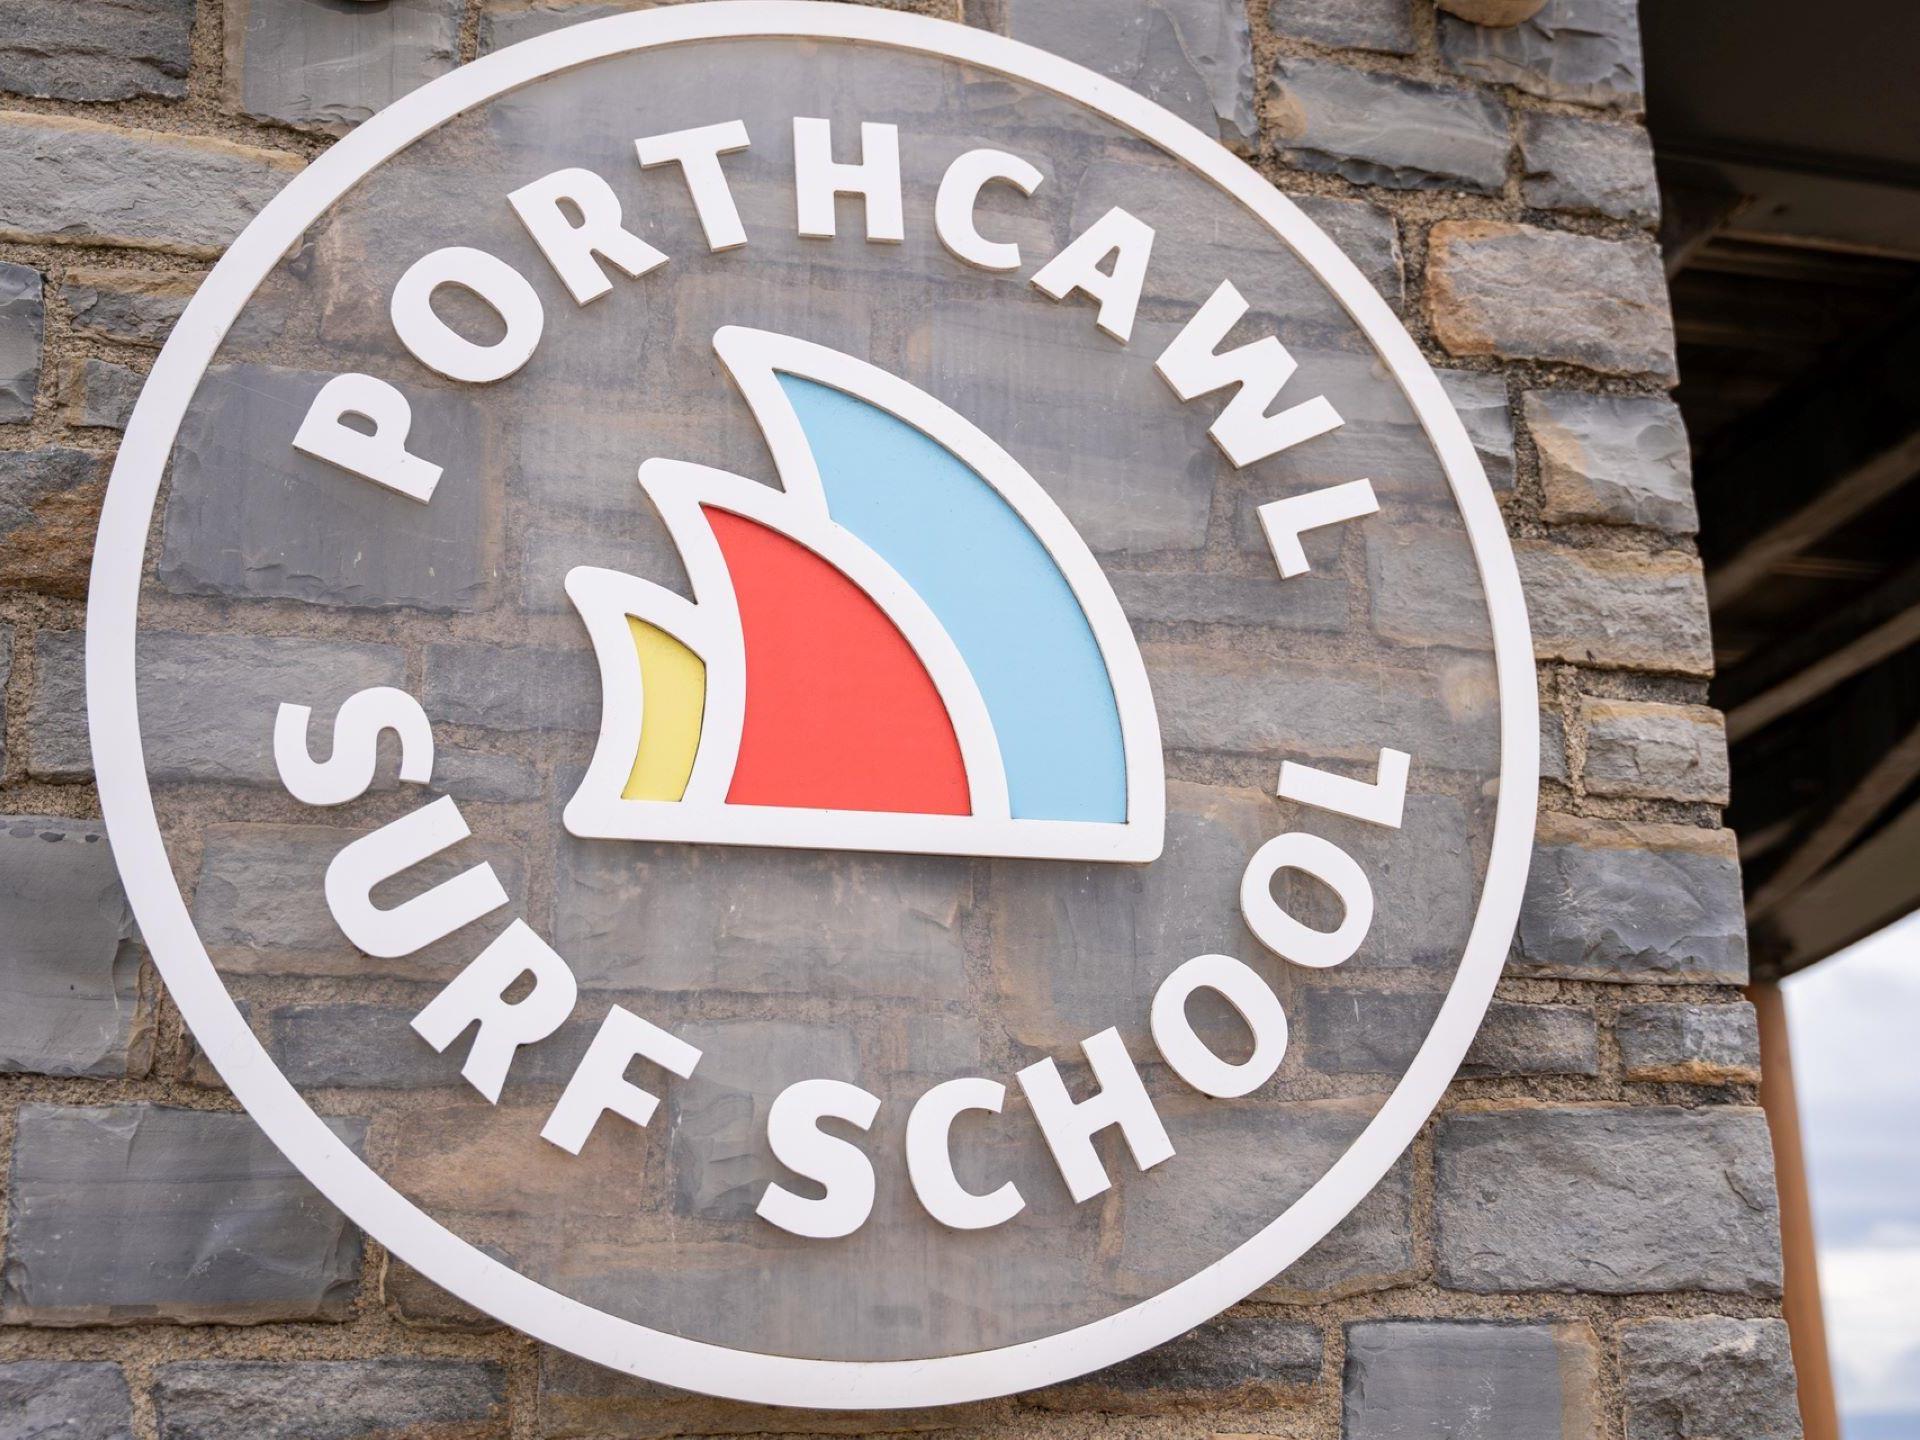 Porthcawl Surf School